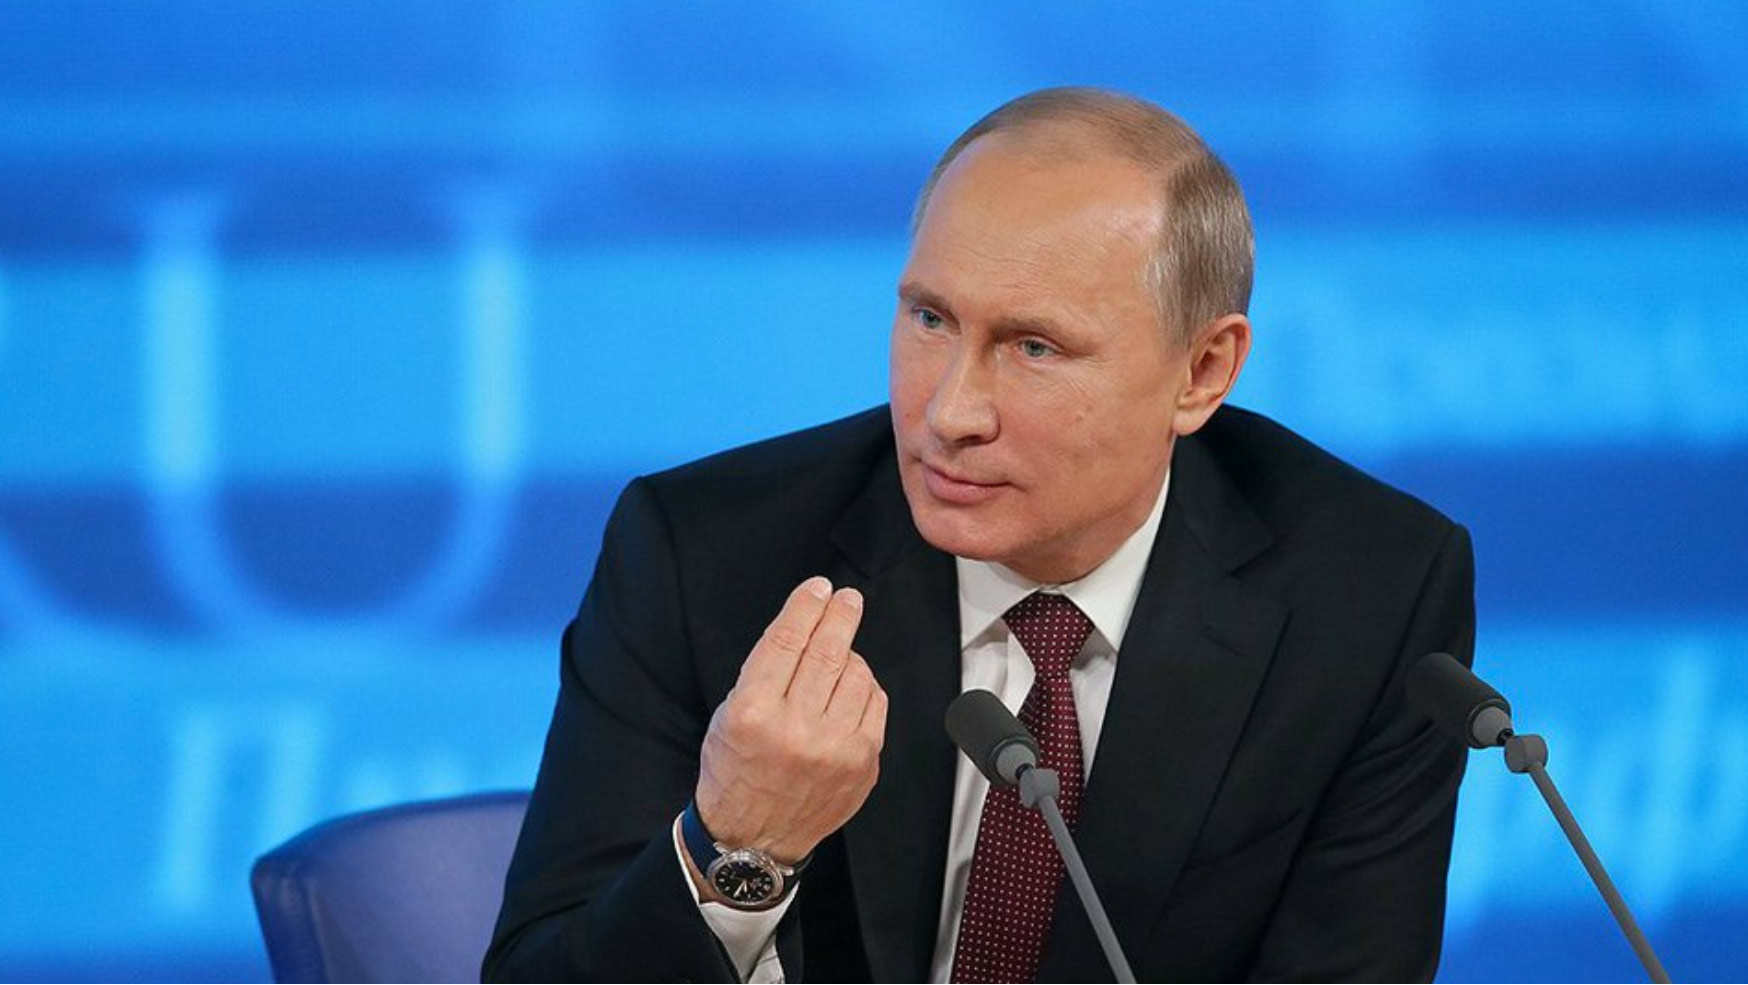 Больше всего россияне хотят узнать у Путина про цены, маткапитал и Новороссию